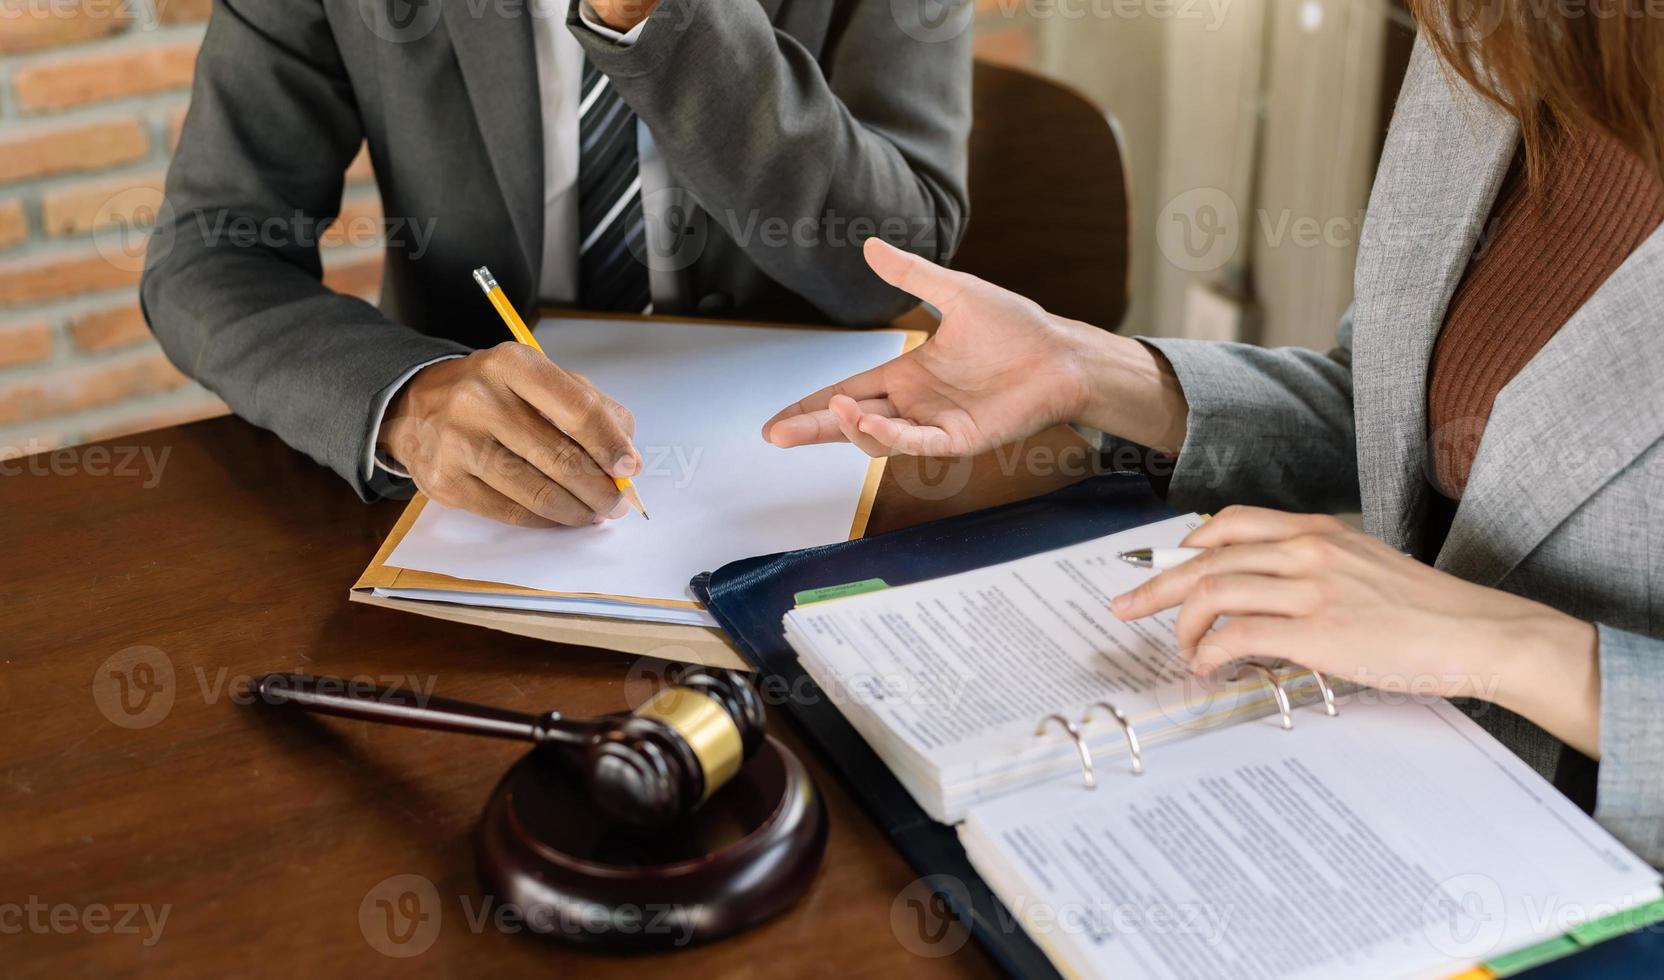 affärsmän och advokater som diskuterar kontraktshandlingar som sitter vid bordet. juridikbegrepp, rådgivning, juridiska tjänster. foto